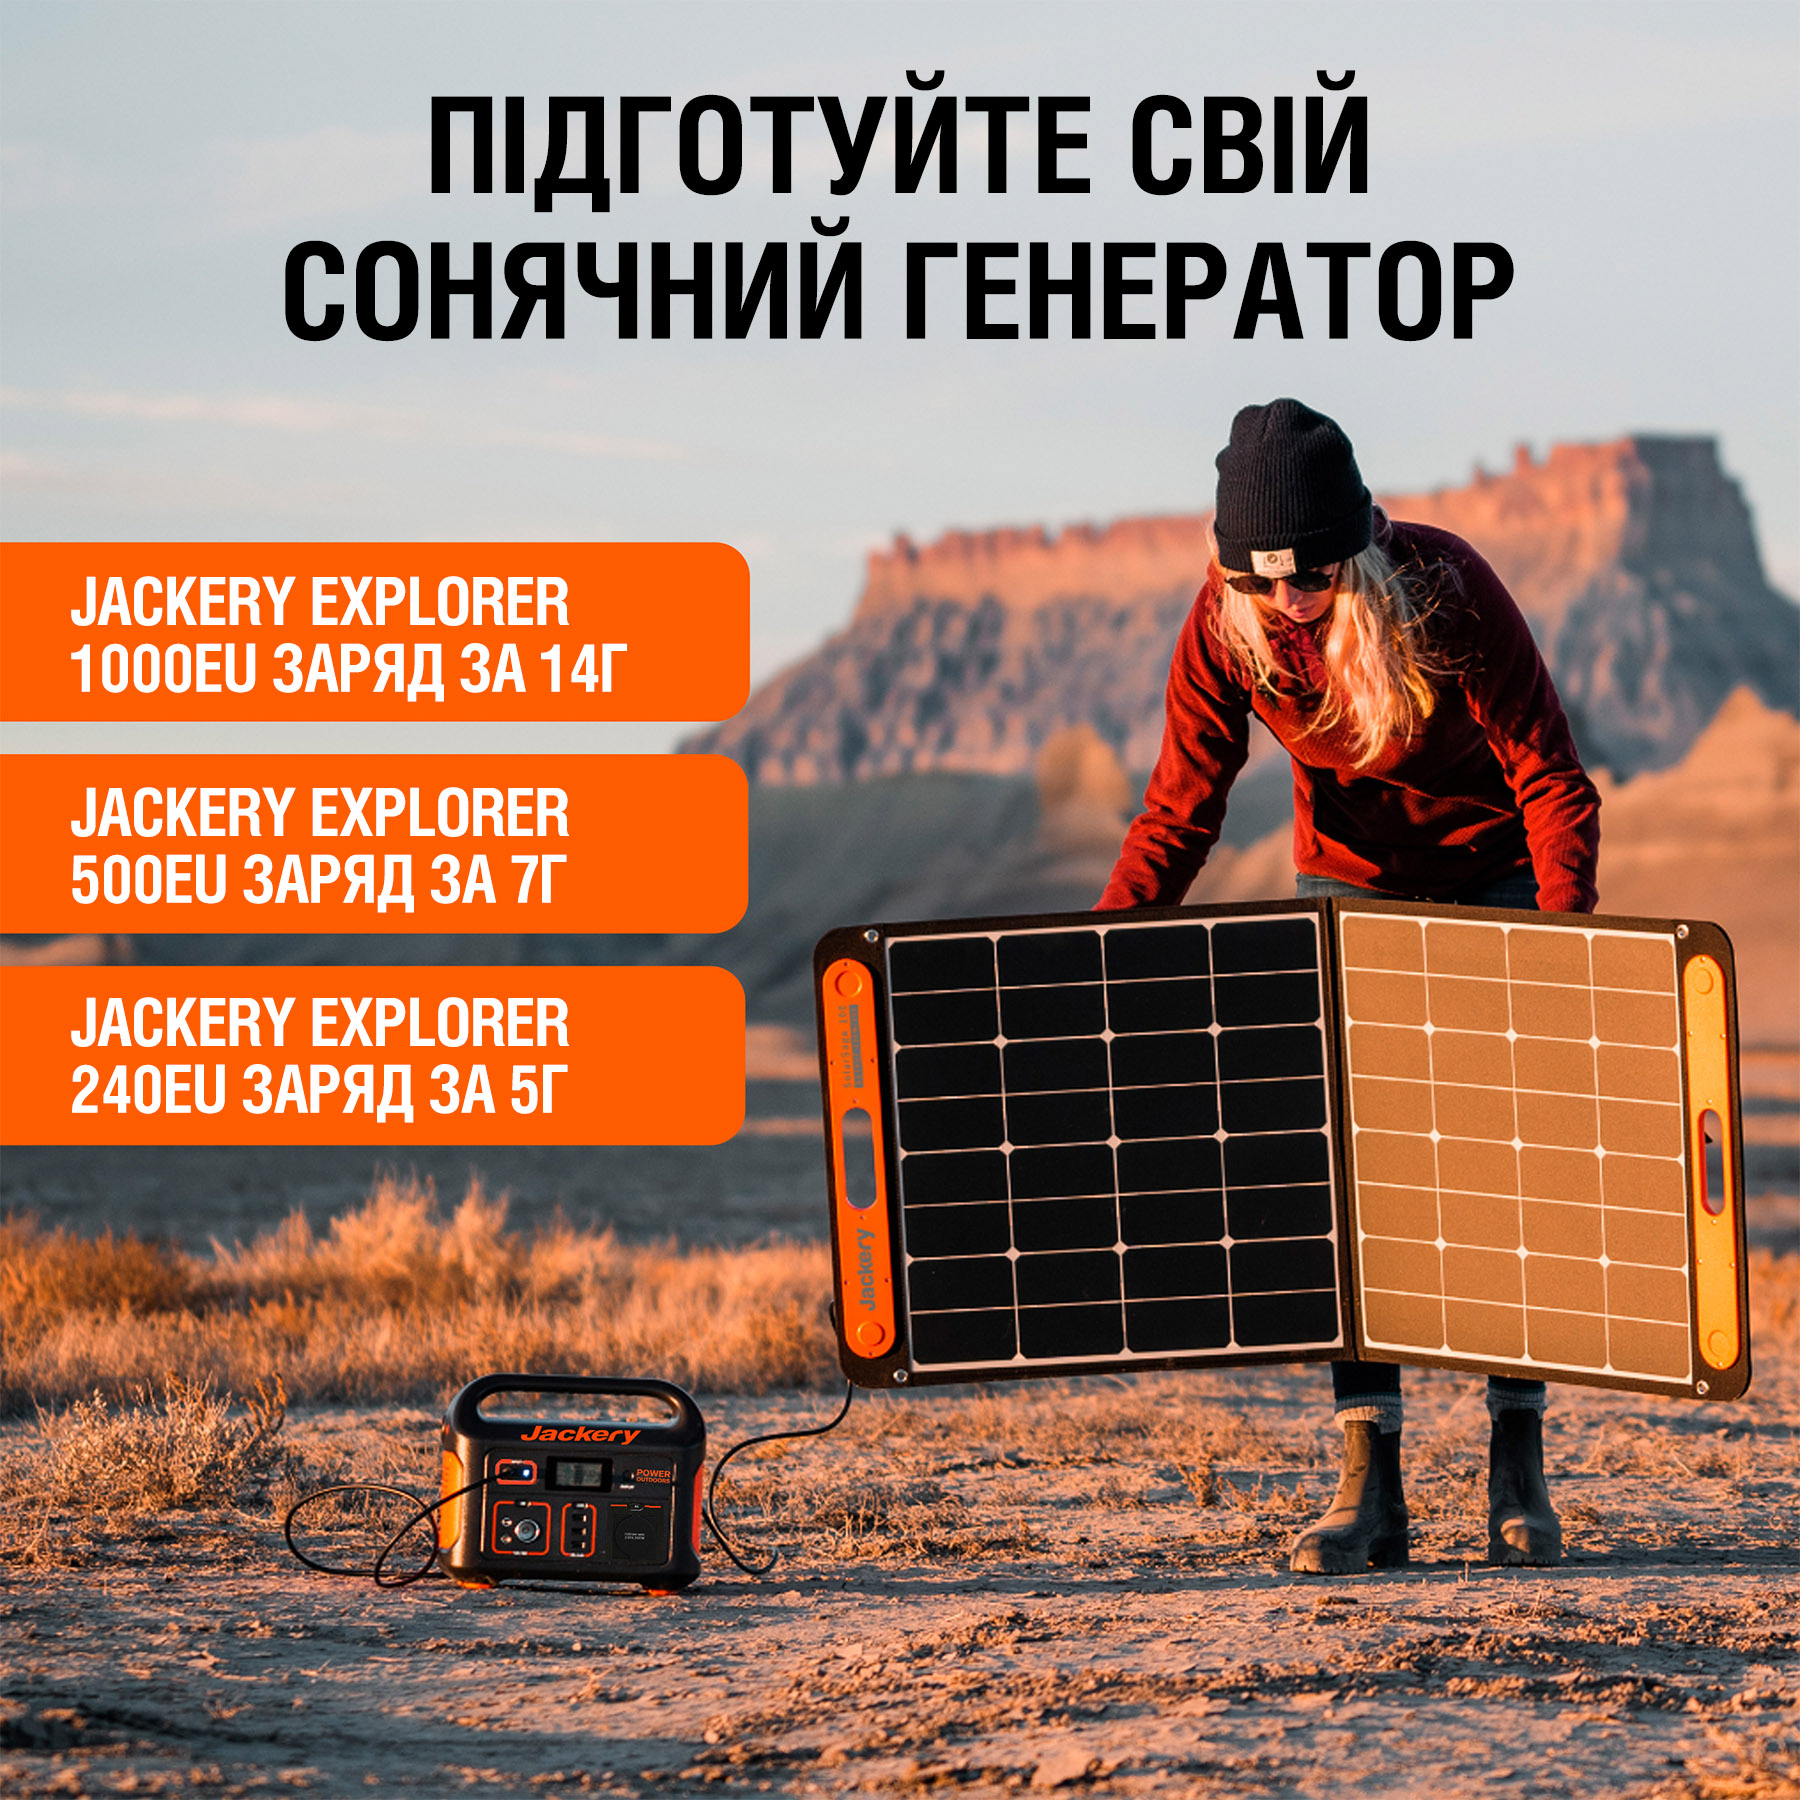 продаём Jackery SolarSaga 100W в Украине - фото 4